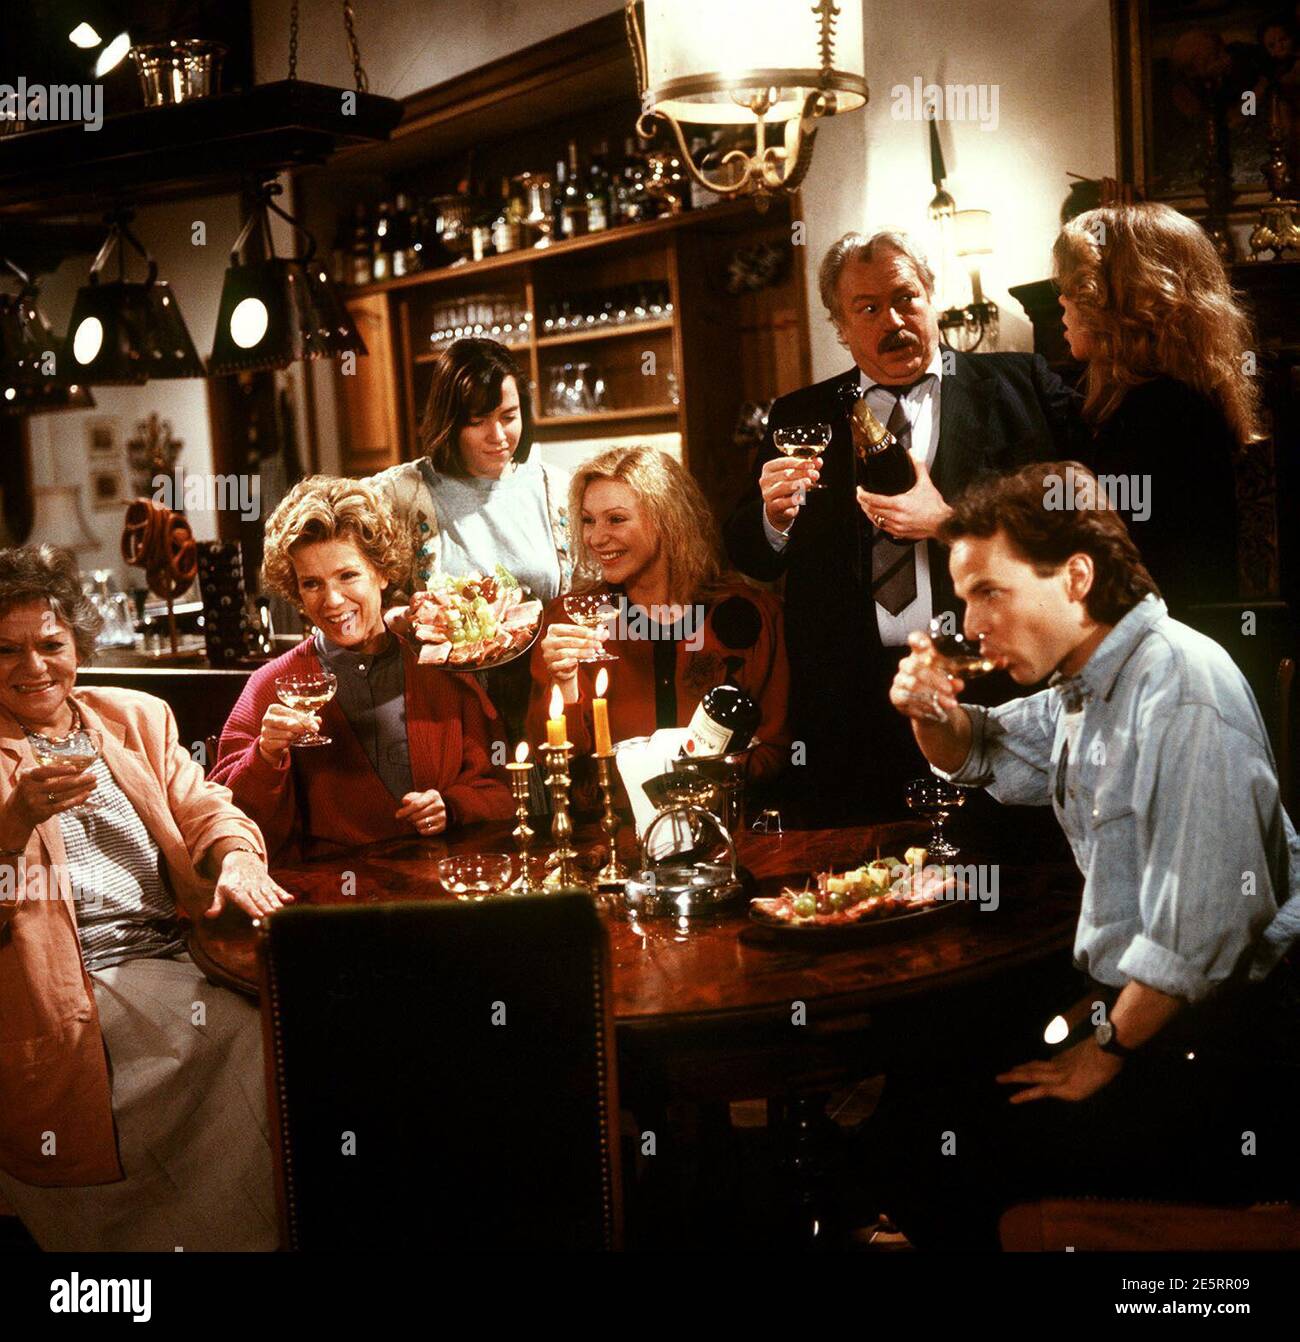 DIESE DROMBUSCHS, ZDF TV Serie, 1990, Folge: Das Vermächtnis, Szene: Oma Drombusch hat in einem Preisausschreiben gewonnen. Die Familie feiert mit ihr, GRETE WURM (Oma), WITTA POHL (Vera), ANJA JAENICKE (Yvonnche), SABINE KAACK (Marion), GÜNTER STRACK (Onkel Ludwig), MARION KRACHT (Tina), MICK WERUP (Chris). DIESE DROMBUSCHS, ZDF TV series, 1990, episode: Das Vermächtnis, scene: GRETE WURM, WITTA POHL, ANJA JAENICKE, SABINE KAACK, GÜNTER STRACK, MARION KRACHT, MICK WERUP. Stock Photo